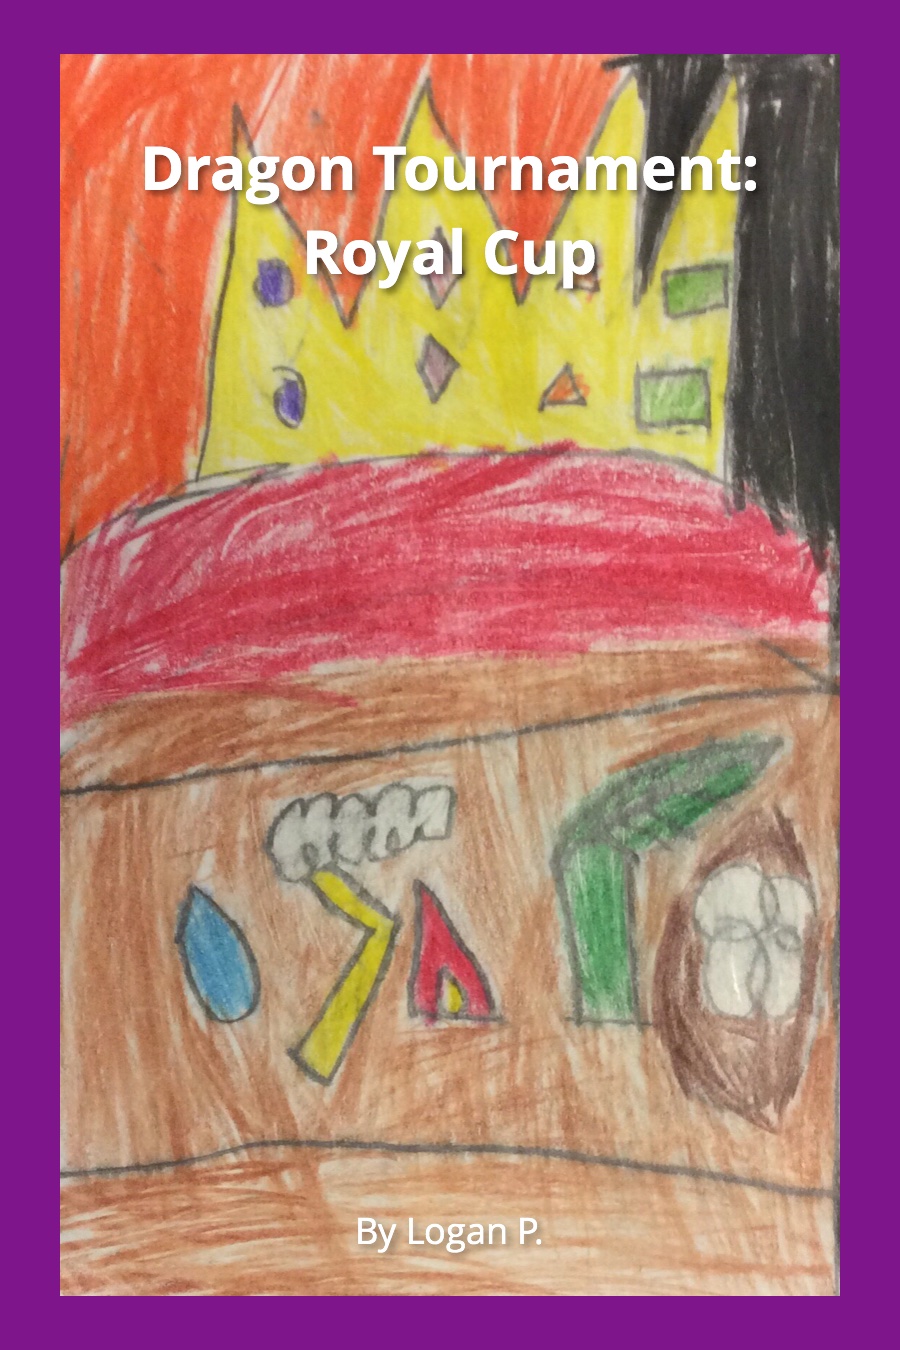 Dragon Tournament Royal Cup by Logan P